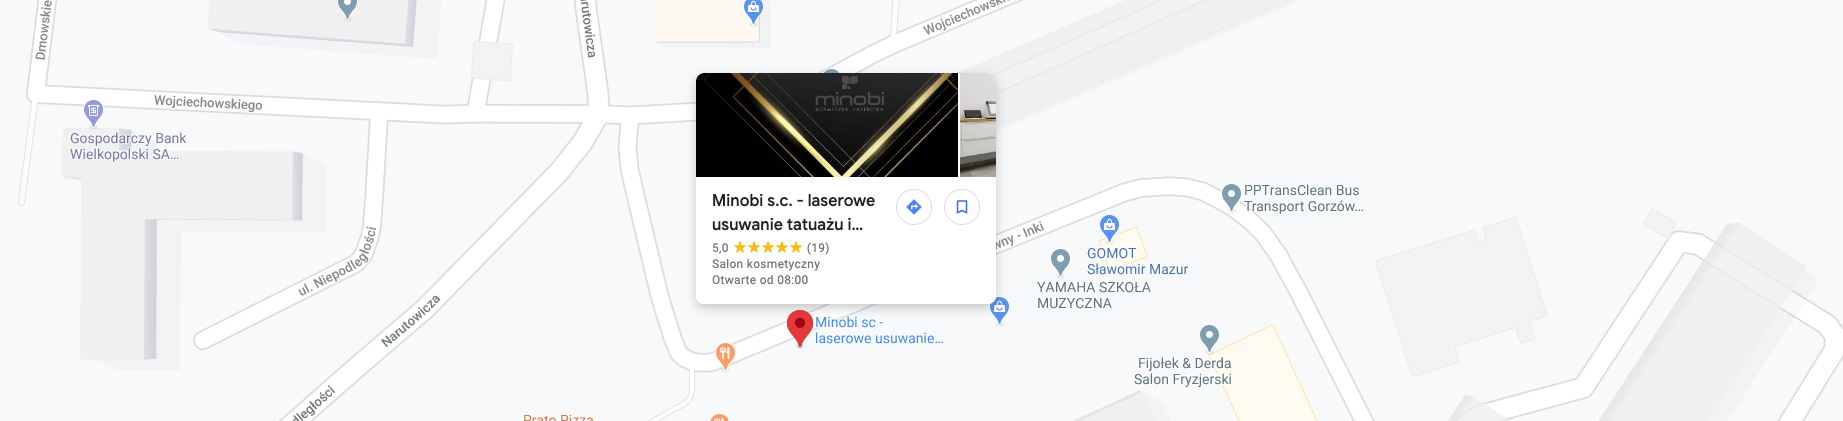 minobi – mapa dojazdu